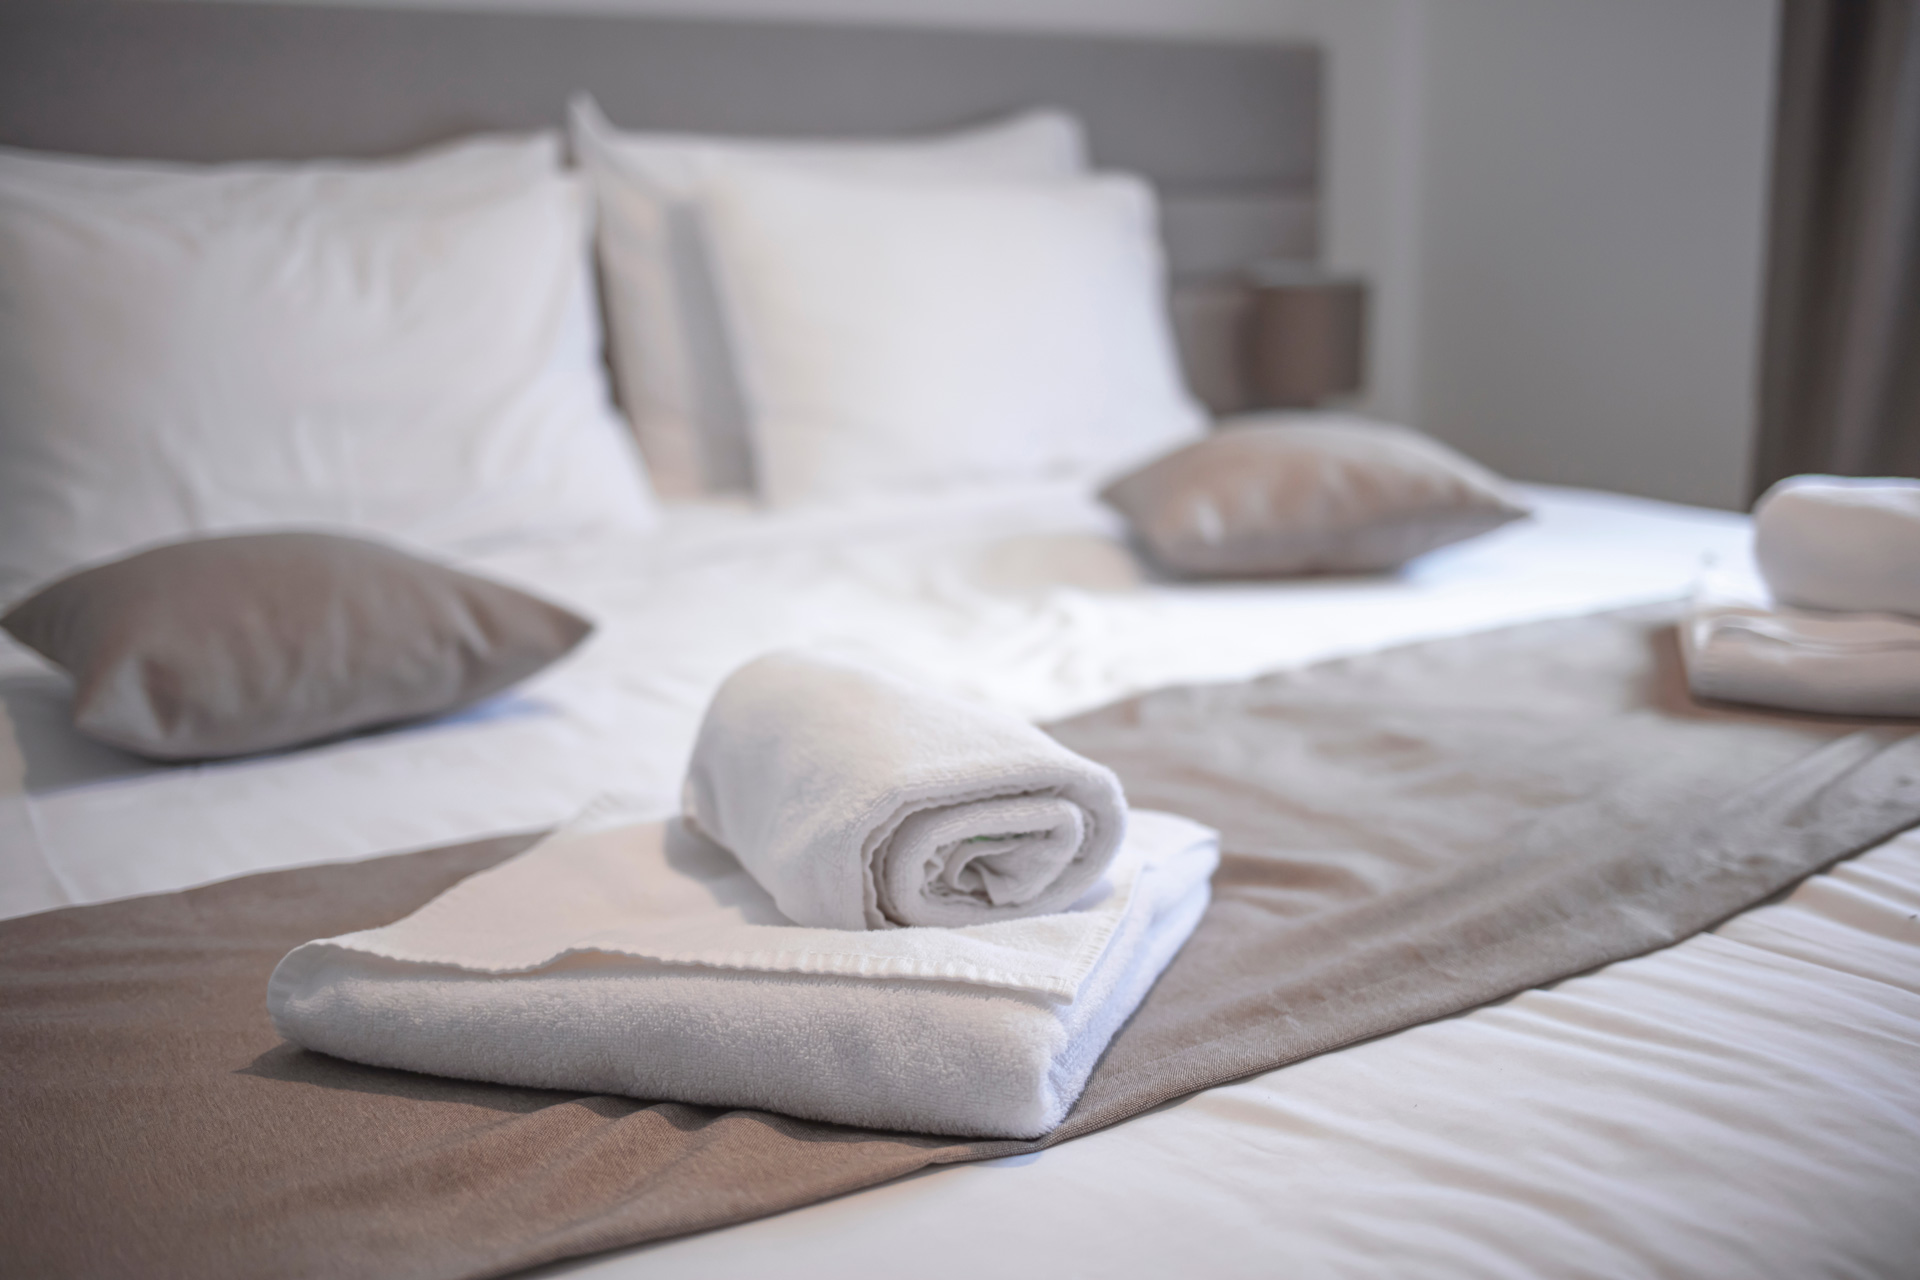 En hotellsäng med vita handdukar på.